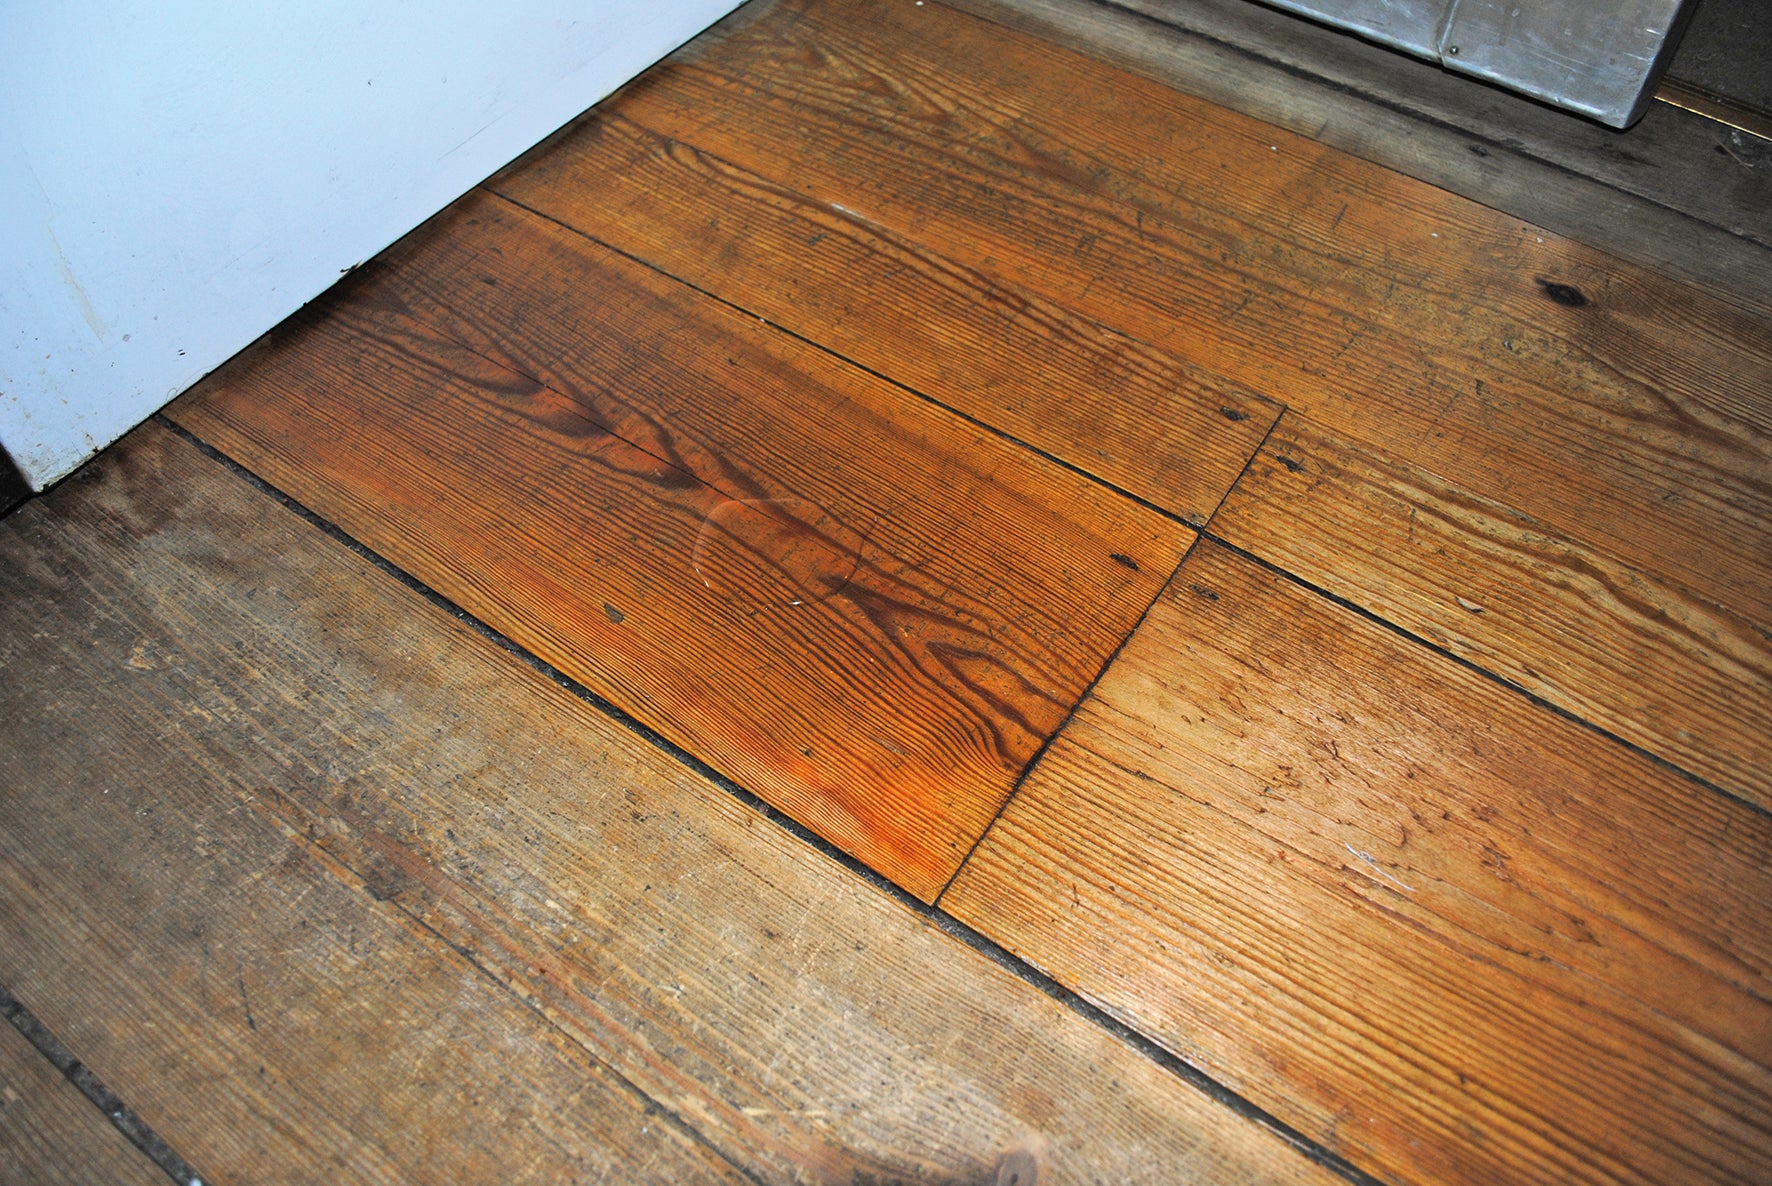 Waxing Old Hardwood Floors